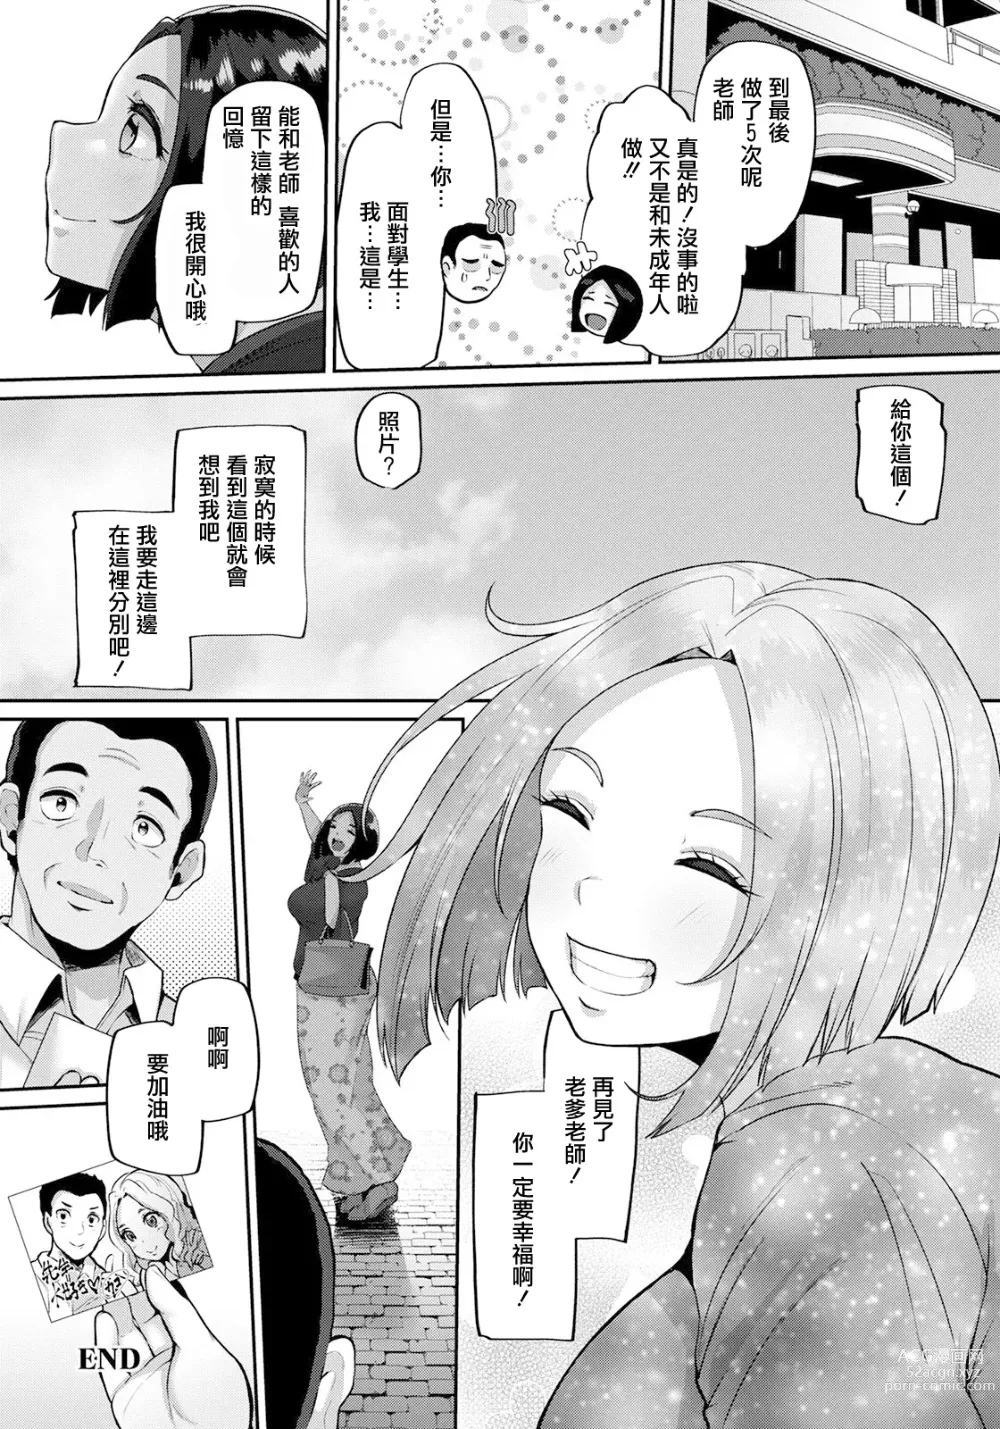 Page 20 of manga Seishun Playback